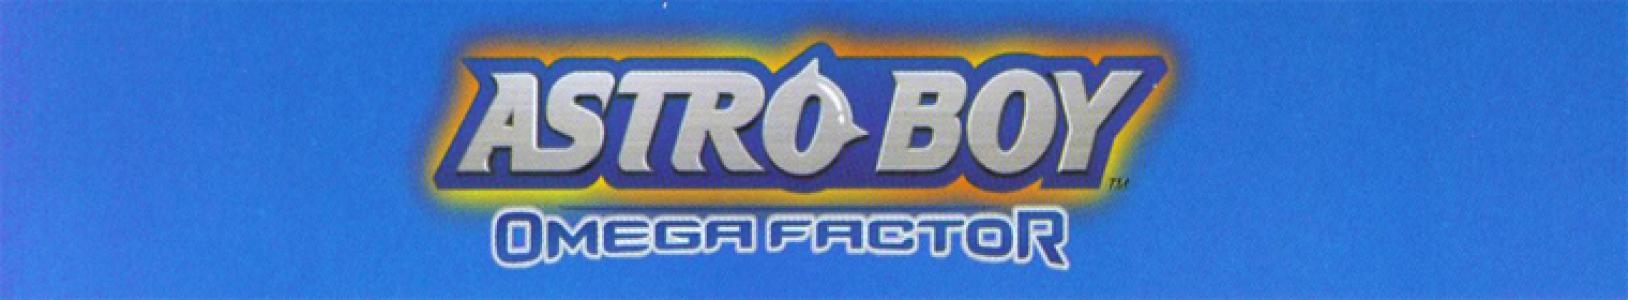 Astro Boy: Omega Factor banner